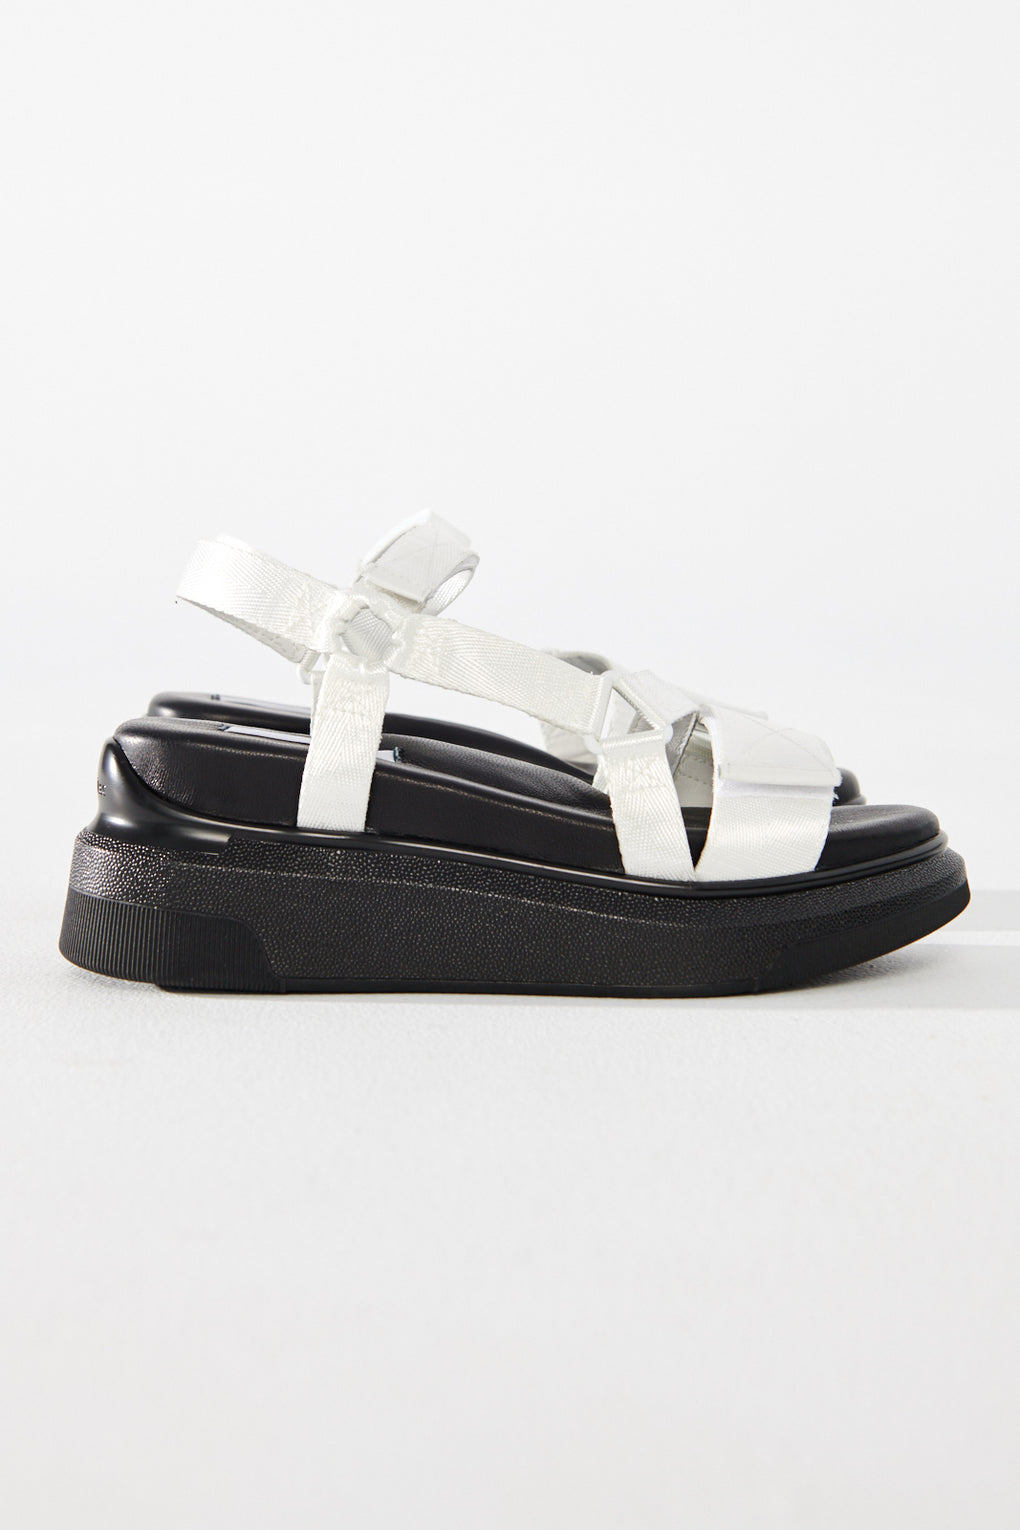 Suzanne Rae Velcro Sandal white black-Suzanne Rae white straps velcro sandal-Idun-St. Paul